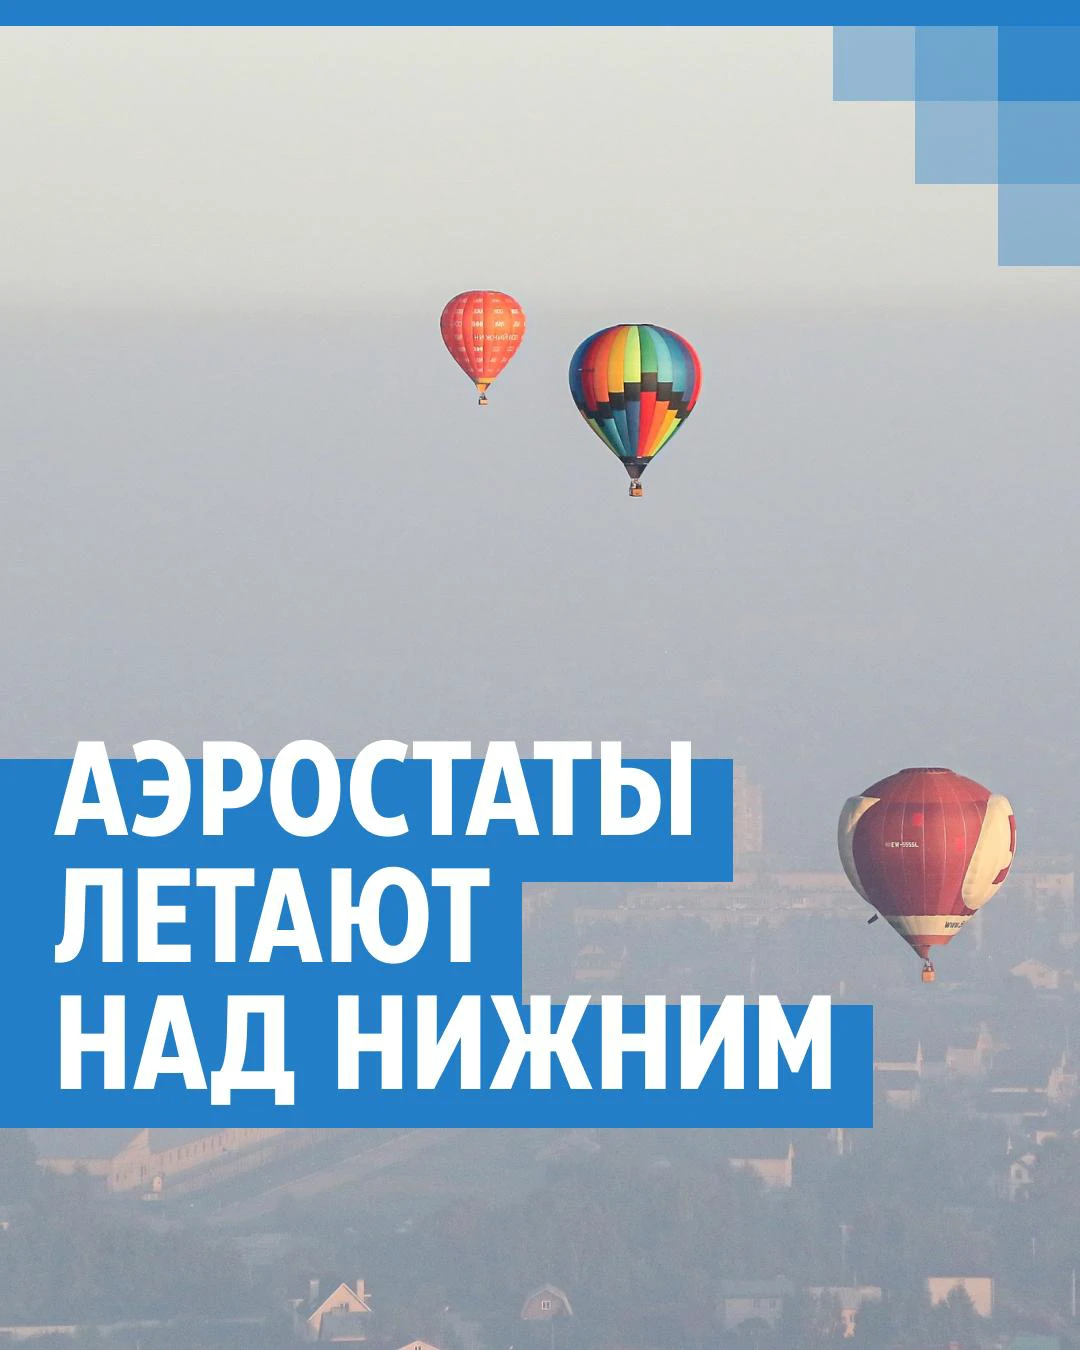 Полет на воздушном шаре Харьков, прогулка на воздушном шаре, цена | KAVA